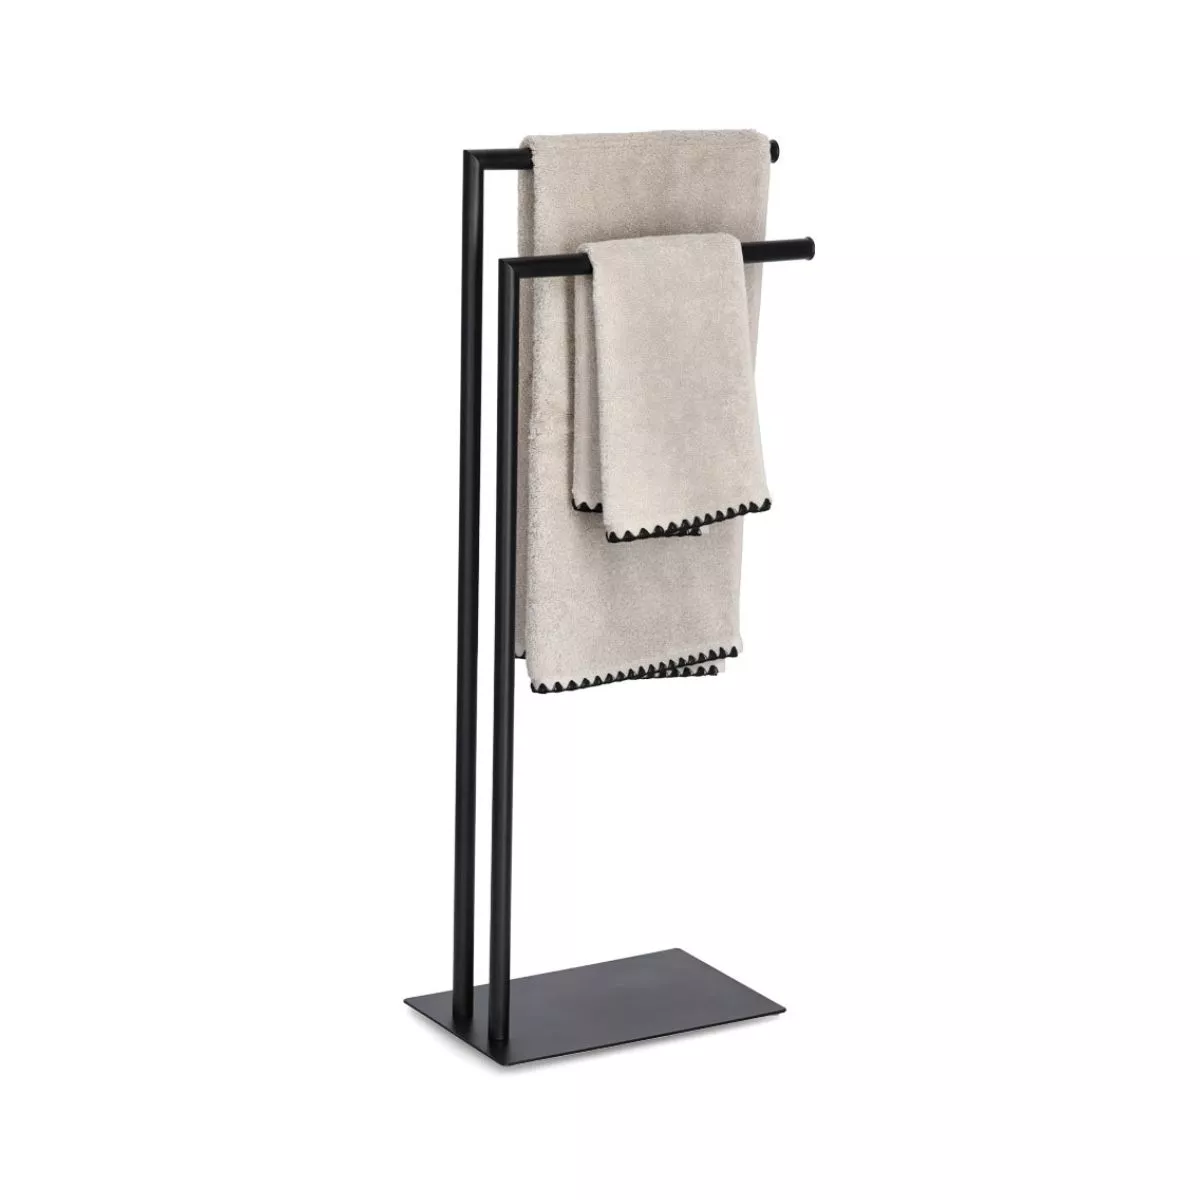 Suport pentru prosoape, negru, din metal, 82 cm, Towel holder Zeller 1